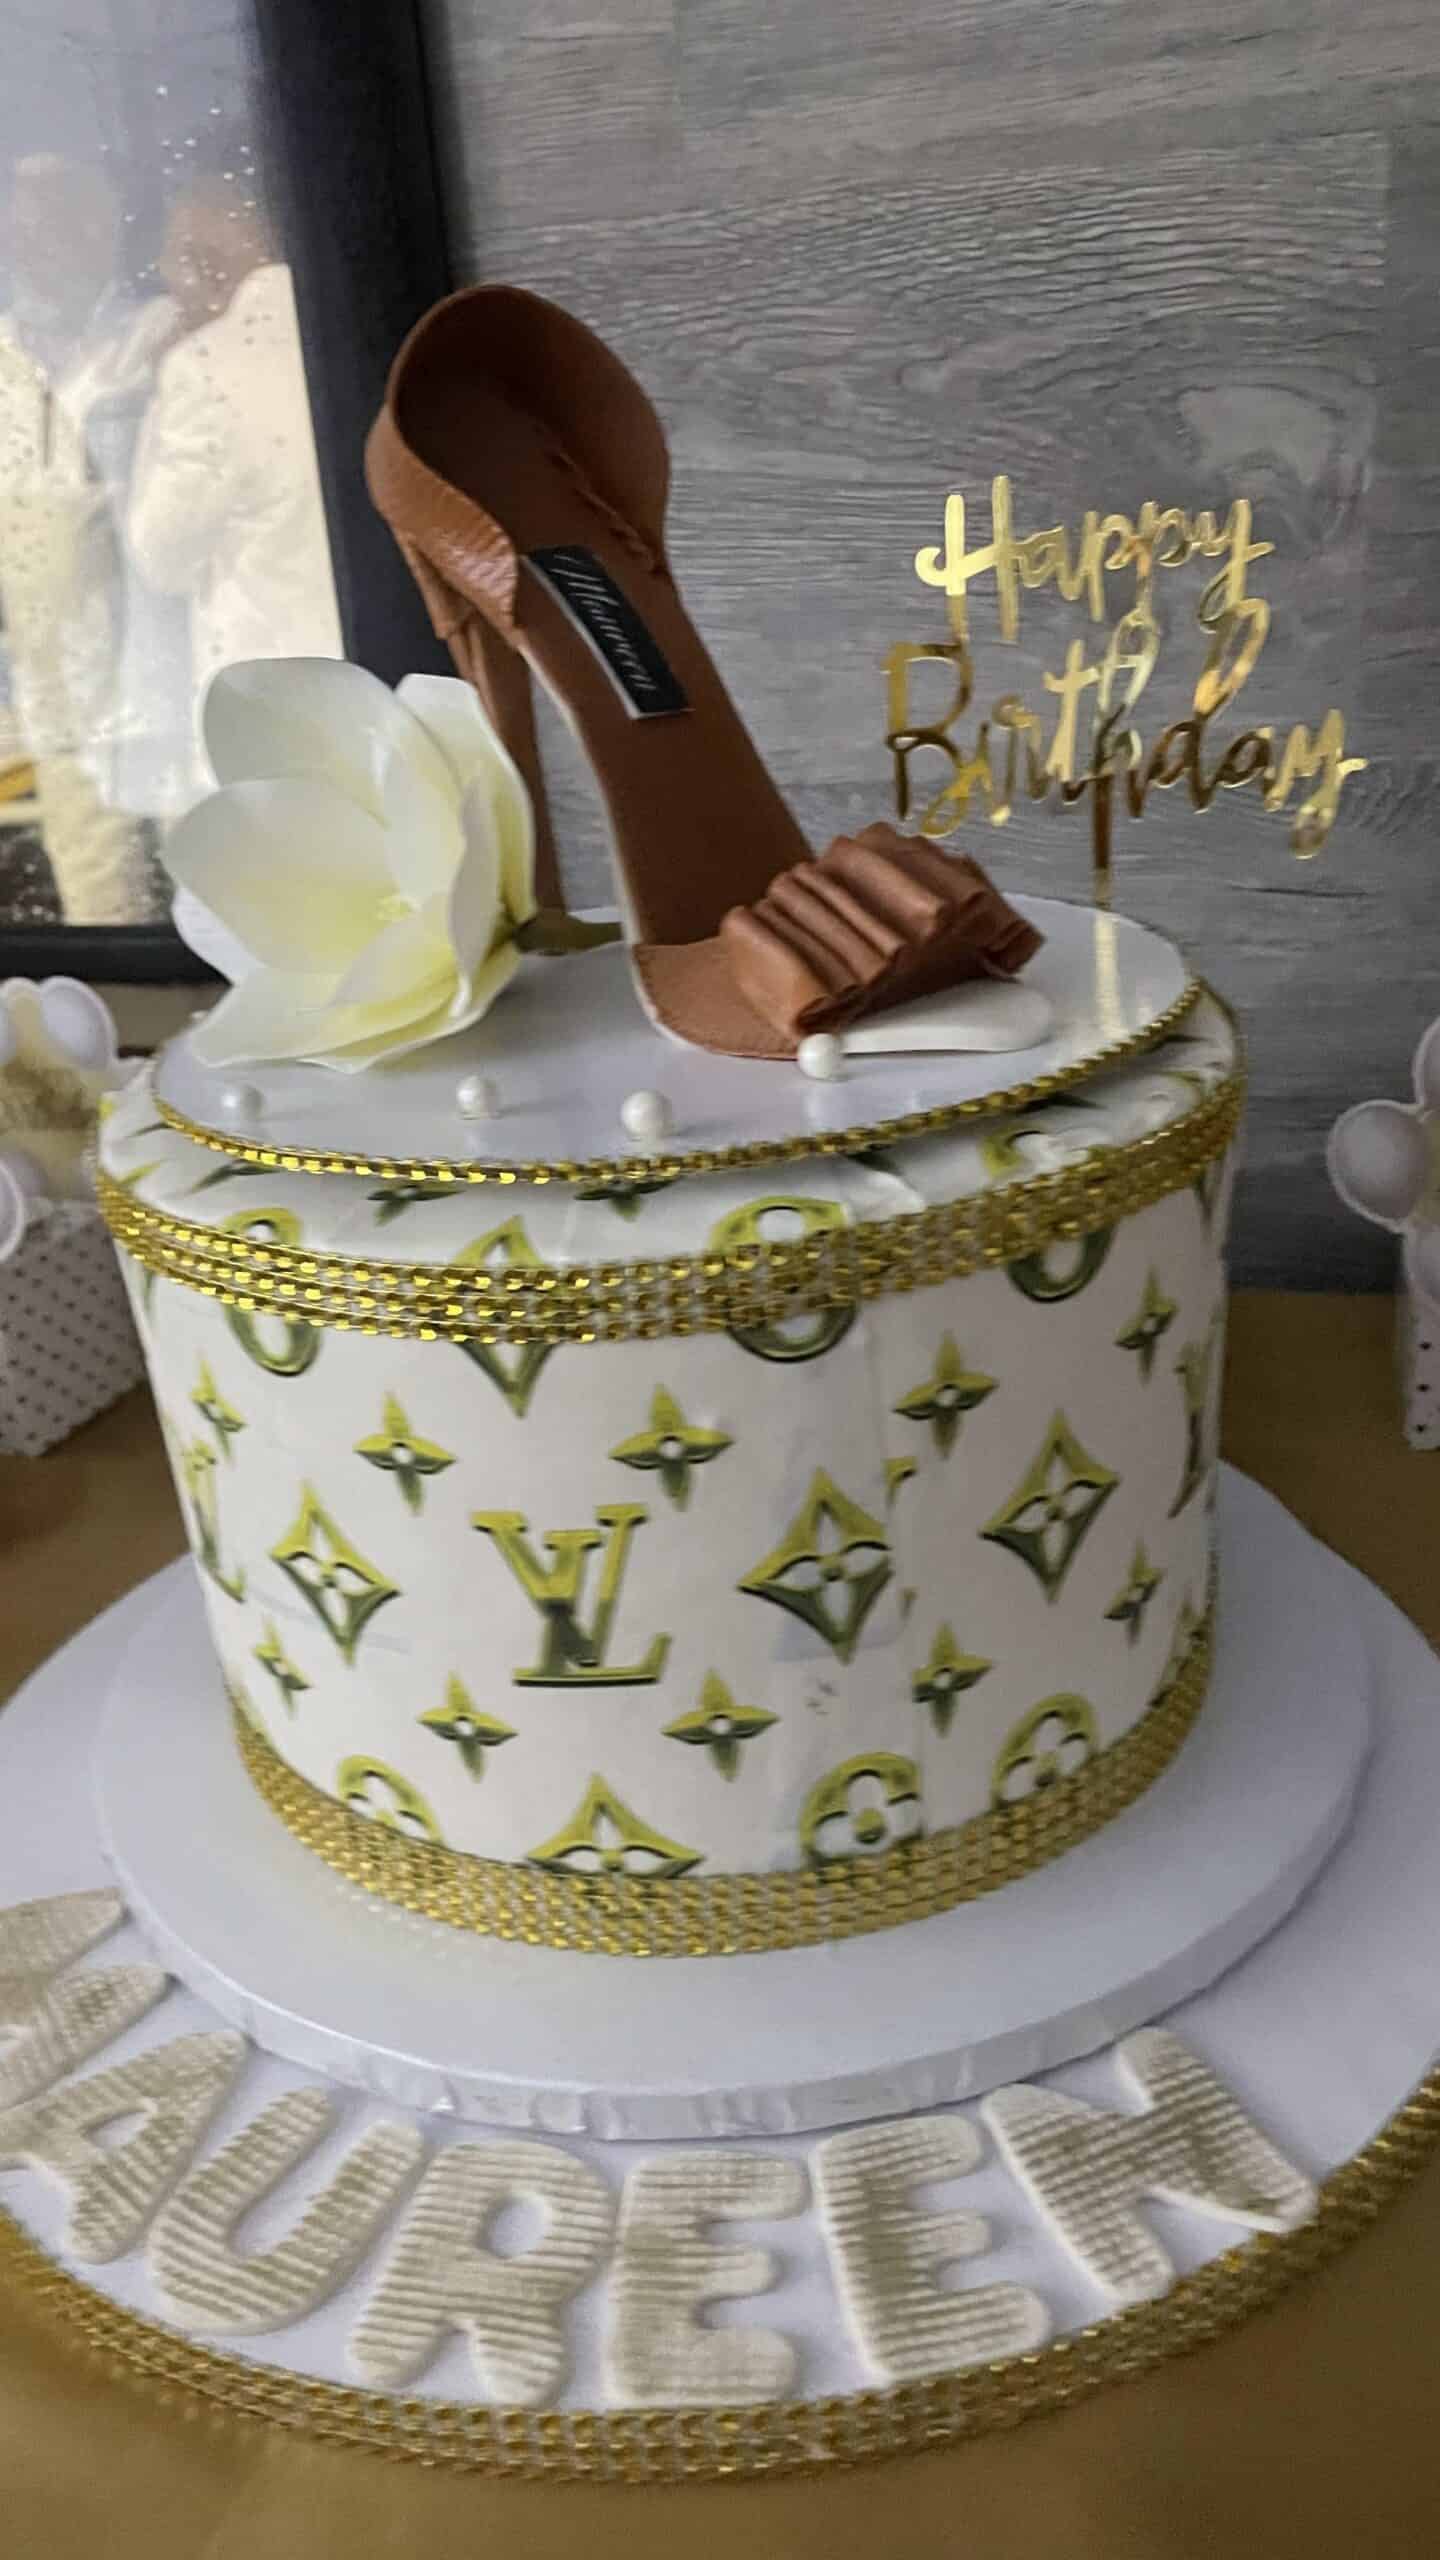 Louis Vuitton Cake with Money Stack – Da Cakes Houston